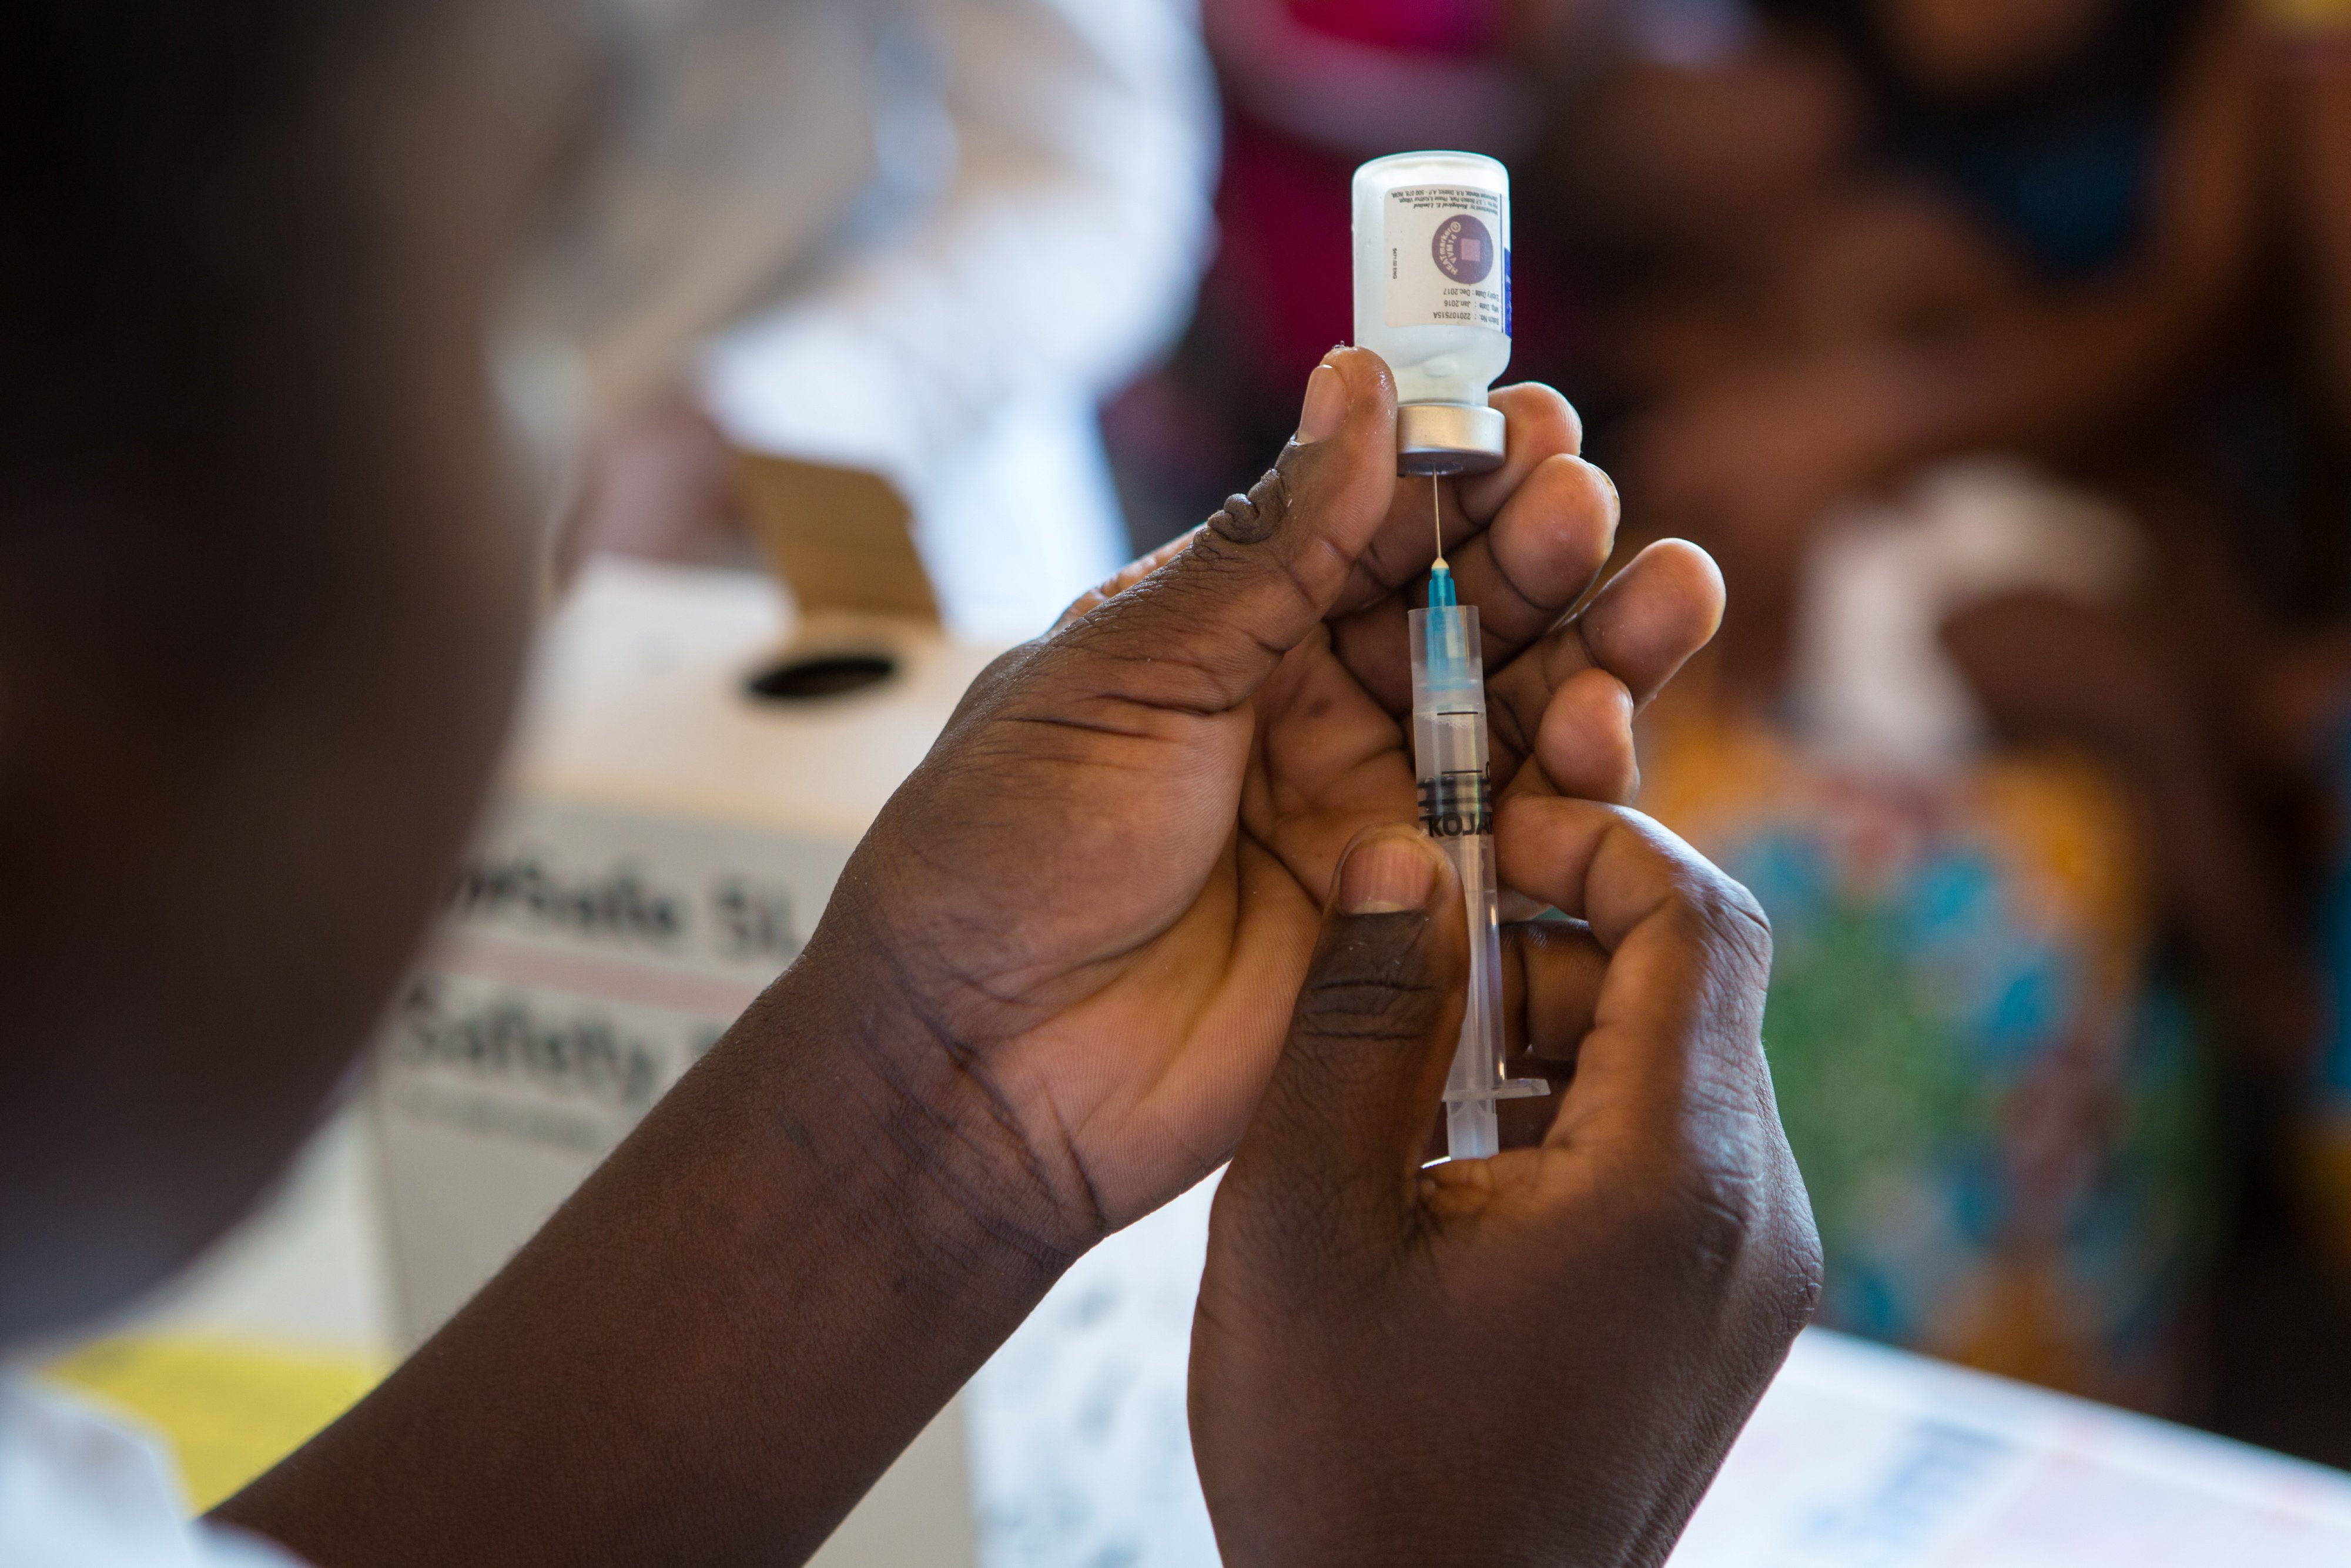 La Caixa vacuna a siete millones de niños en África y Latinoamérica desde 2008